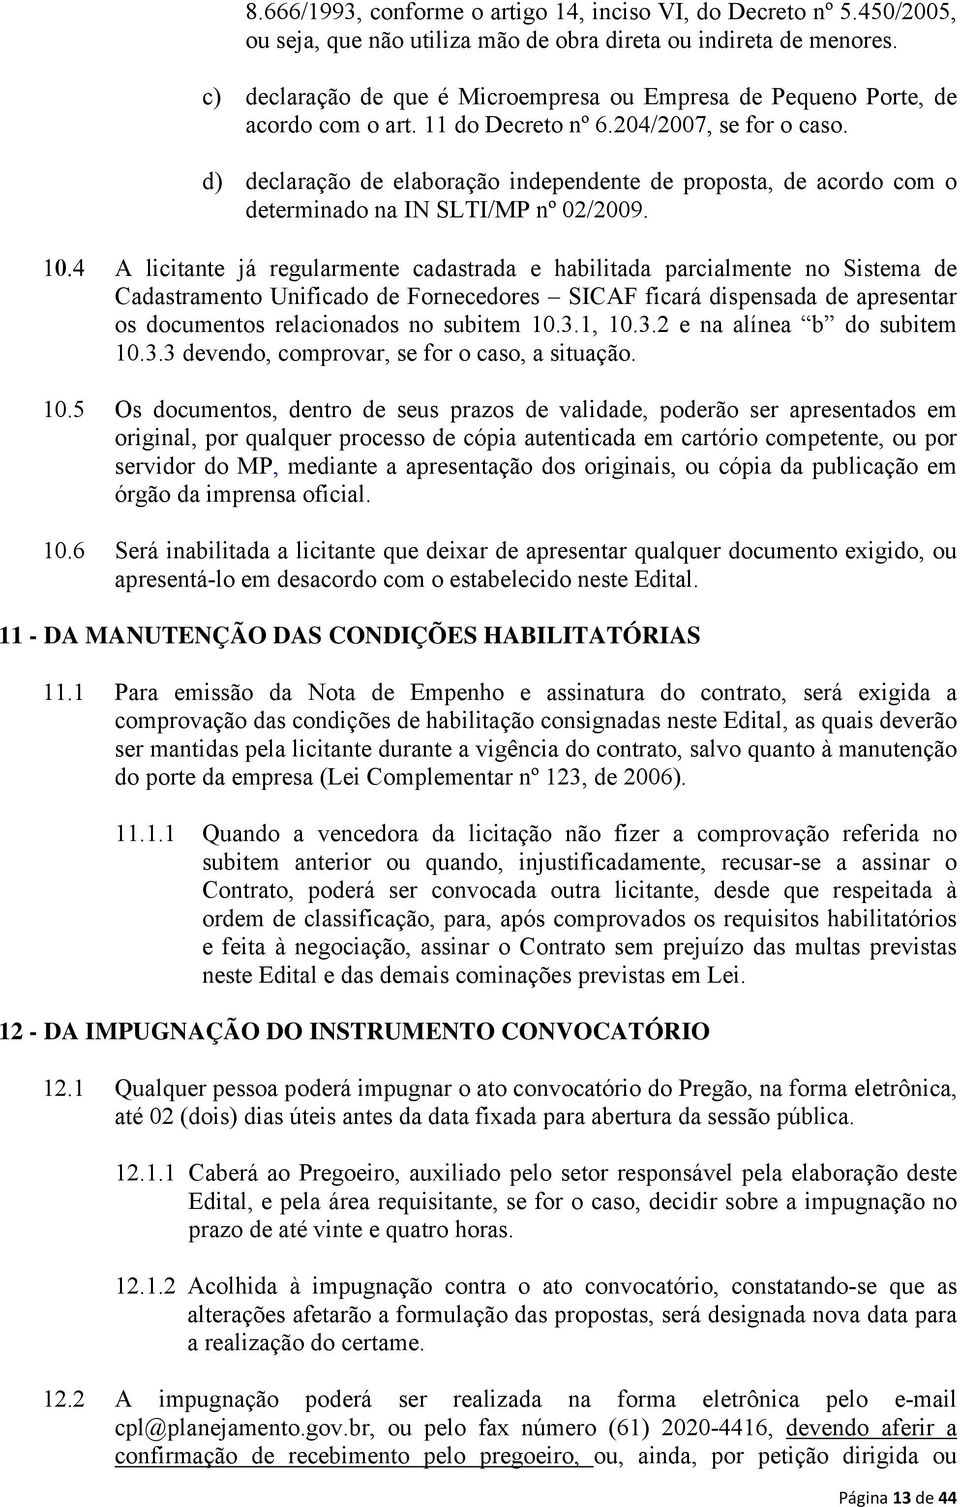 d) declaração de elaboração independente de proposta, de acordo com o determinado na IN SLTI/MP nº 02/2009.